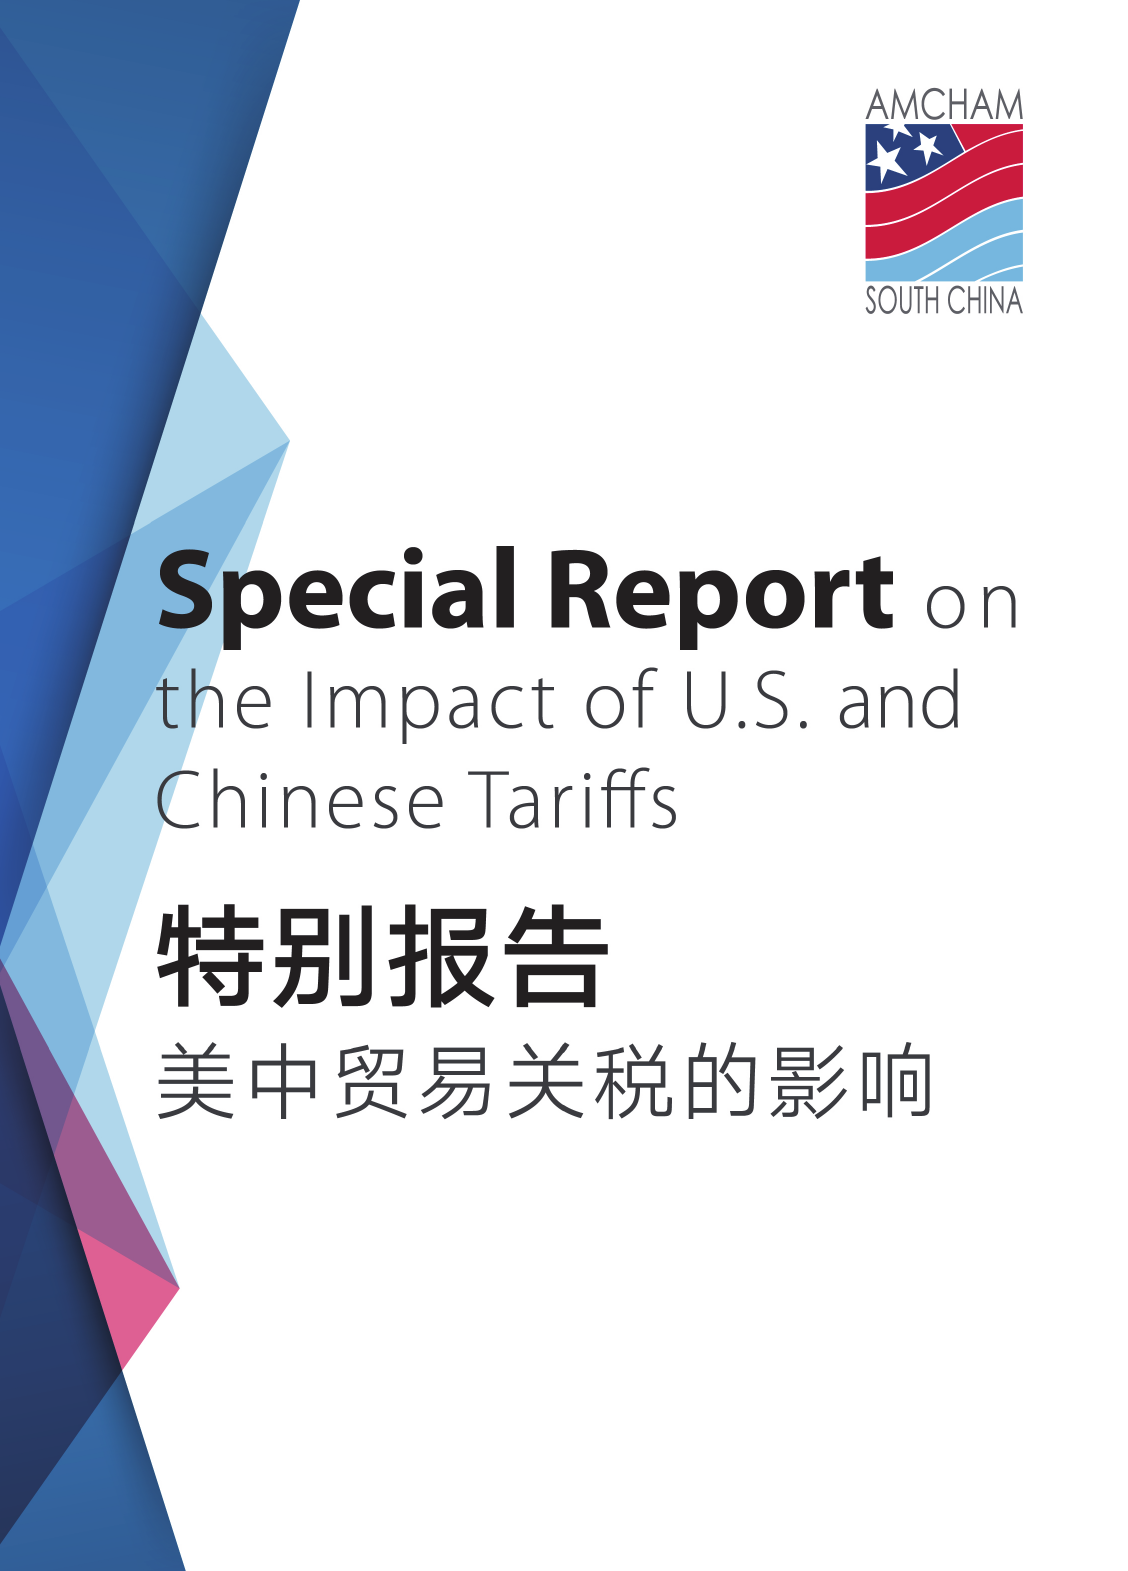 美中贸易关税的影响-华南美国商会-2018.11-19页